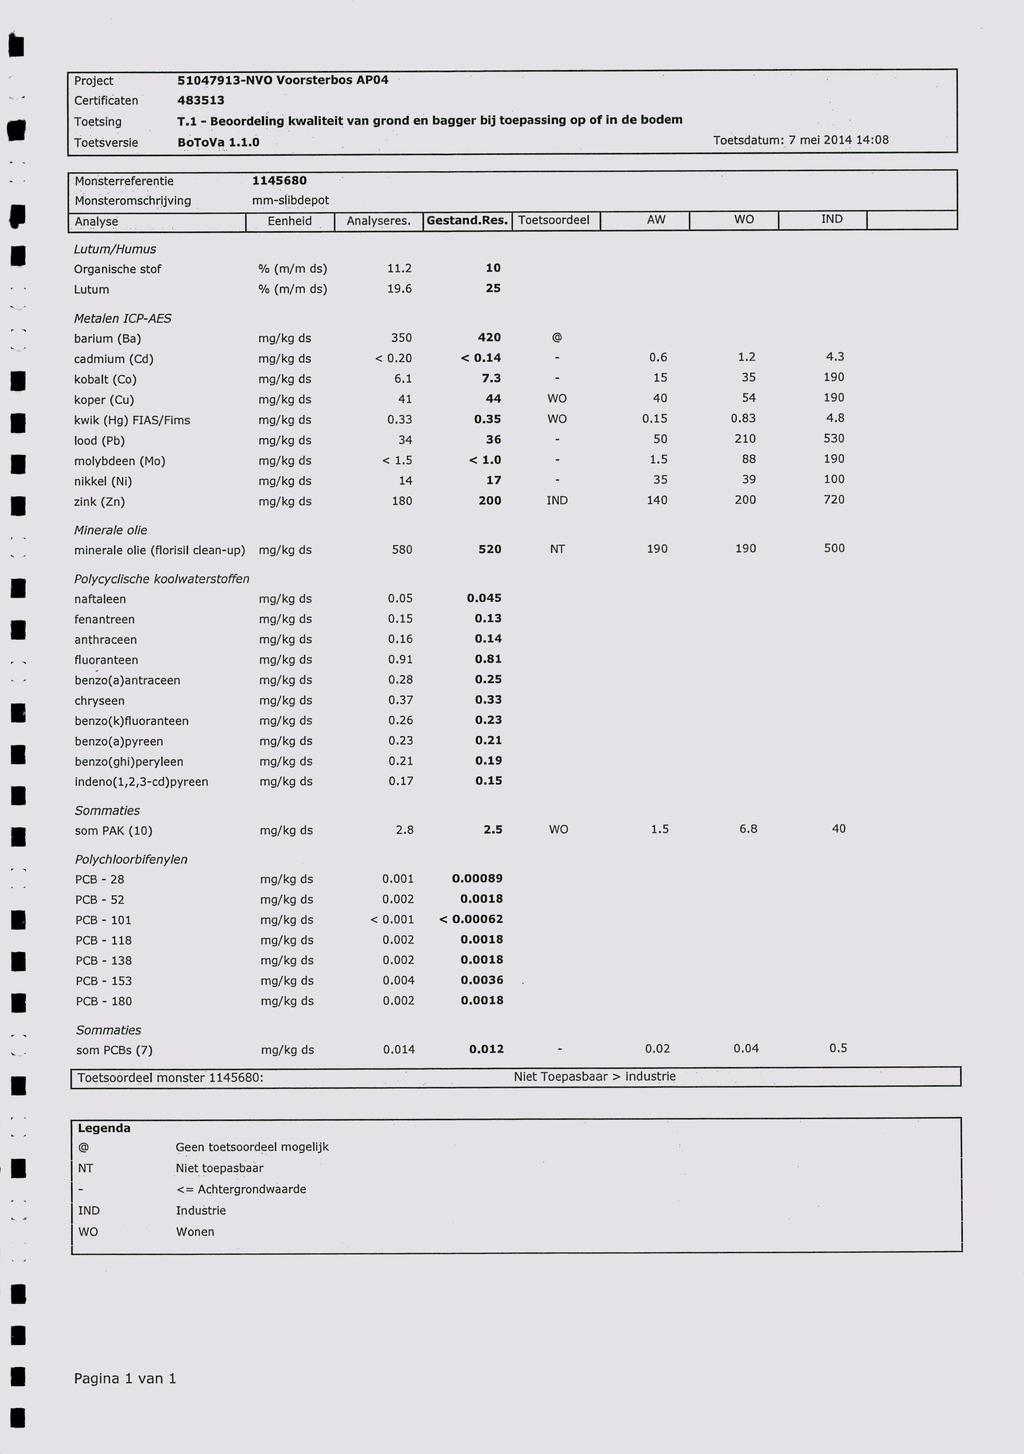 Project 51047913-NVO Voorsterbos AP04 - - Certificaten 483513 m Toetsing T.1 - Beoordeling kwaliteit van grond en bagger bij toepassing op of in de bodem m Toetsversie BoToVa 1.1.0 Toetsdatum: 7 mei 2014 14:08 Monsterreferentie 1145680 Monsteromschrijving mm-slibdepot Analyse Eenheid Analyseres.